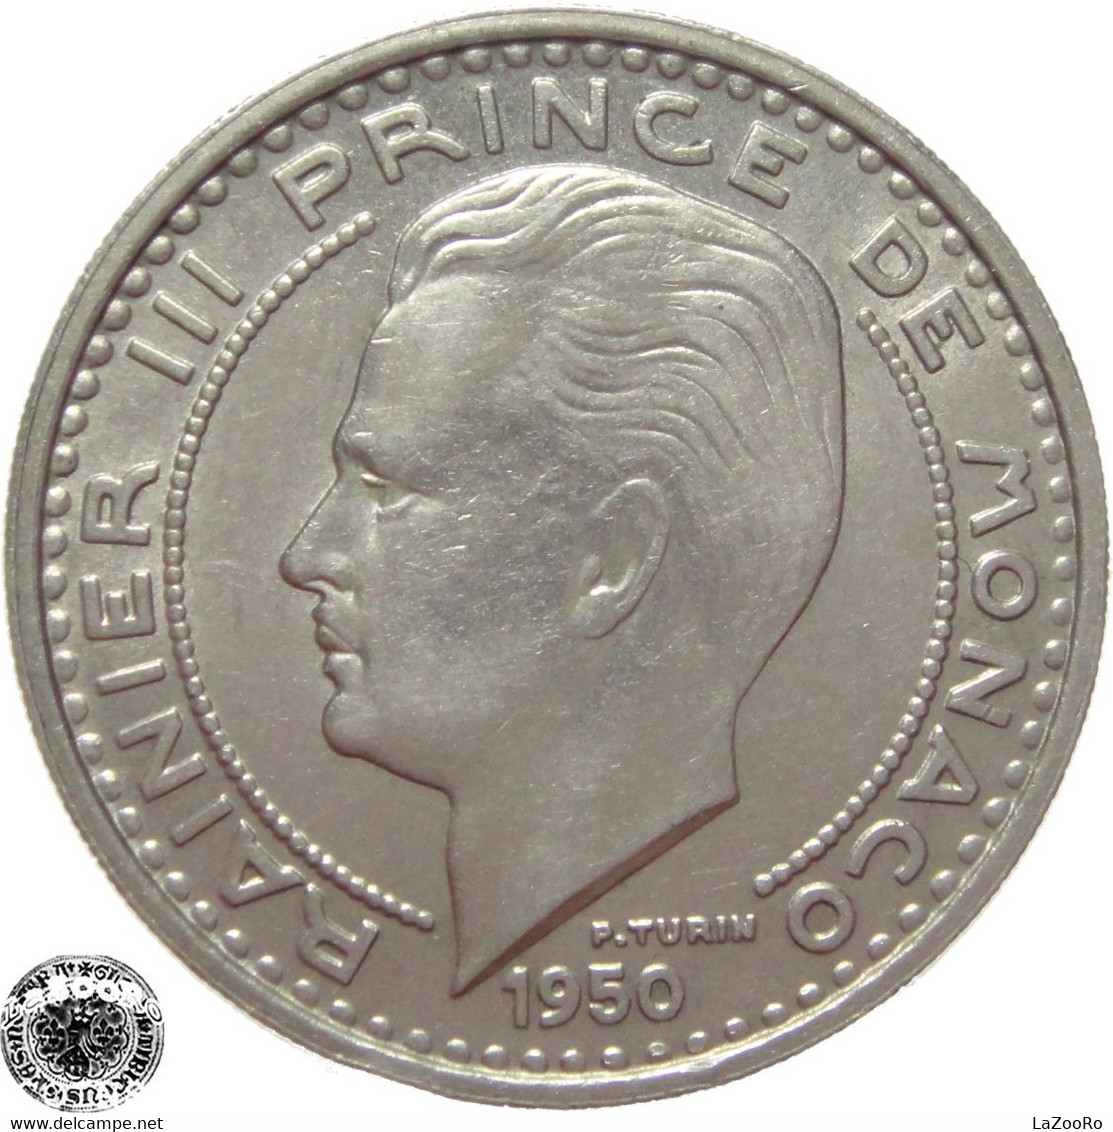 LaZooRo: Monaco 100 Francs 1950 XF / UNC - 1949-1956 Franchi Antichi